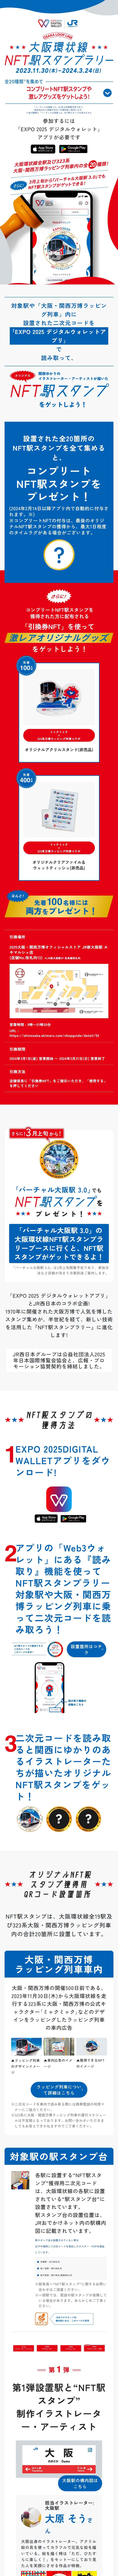 大阪環状線NFT駅スタンプラリー_sp_1